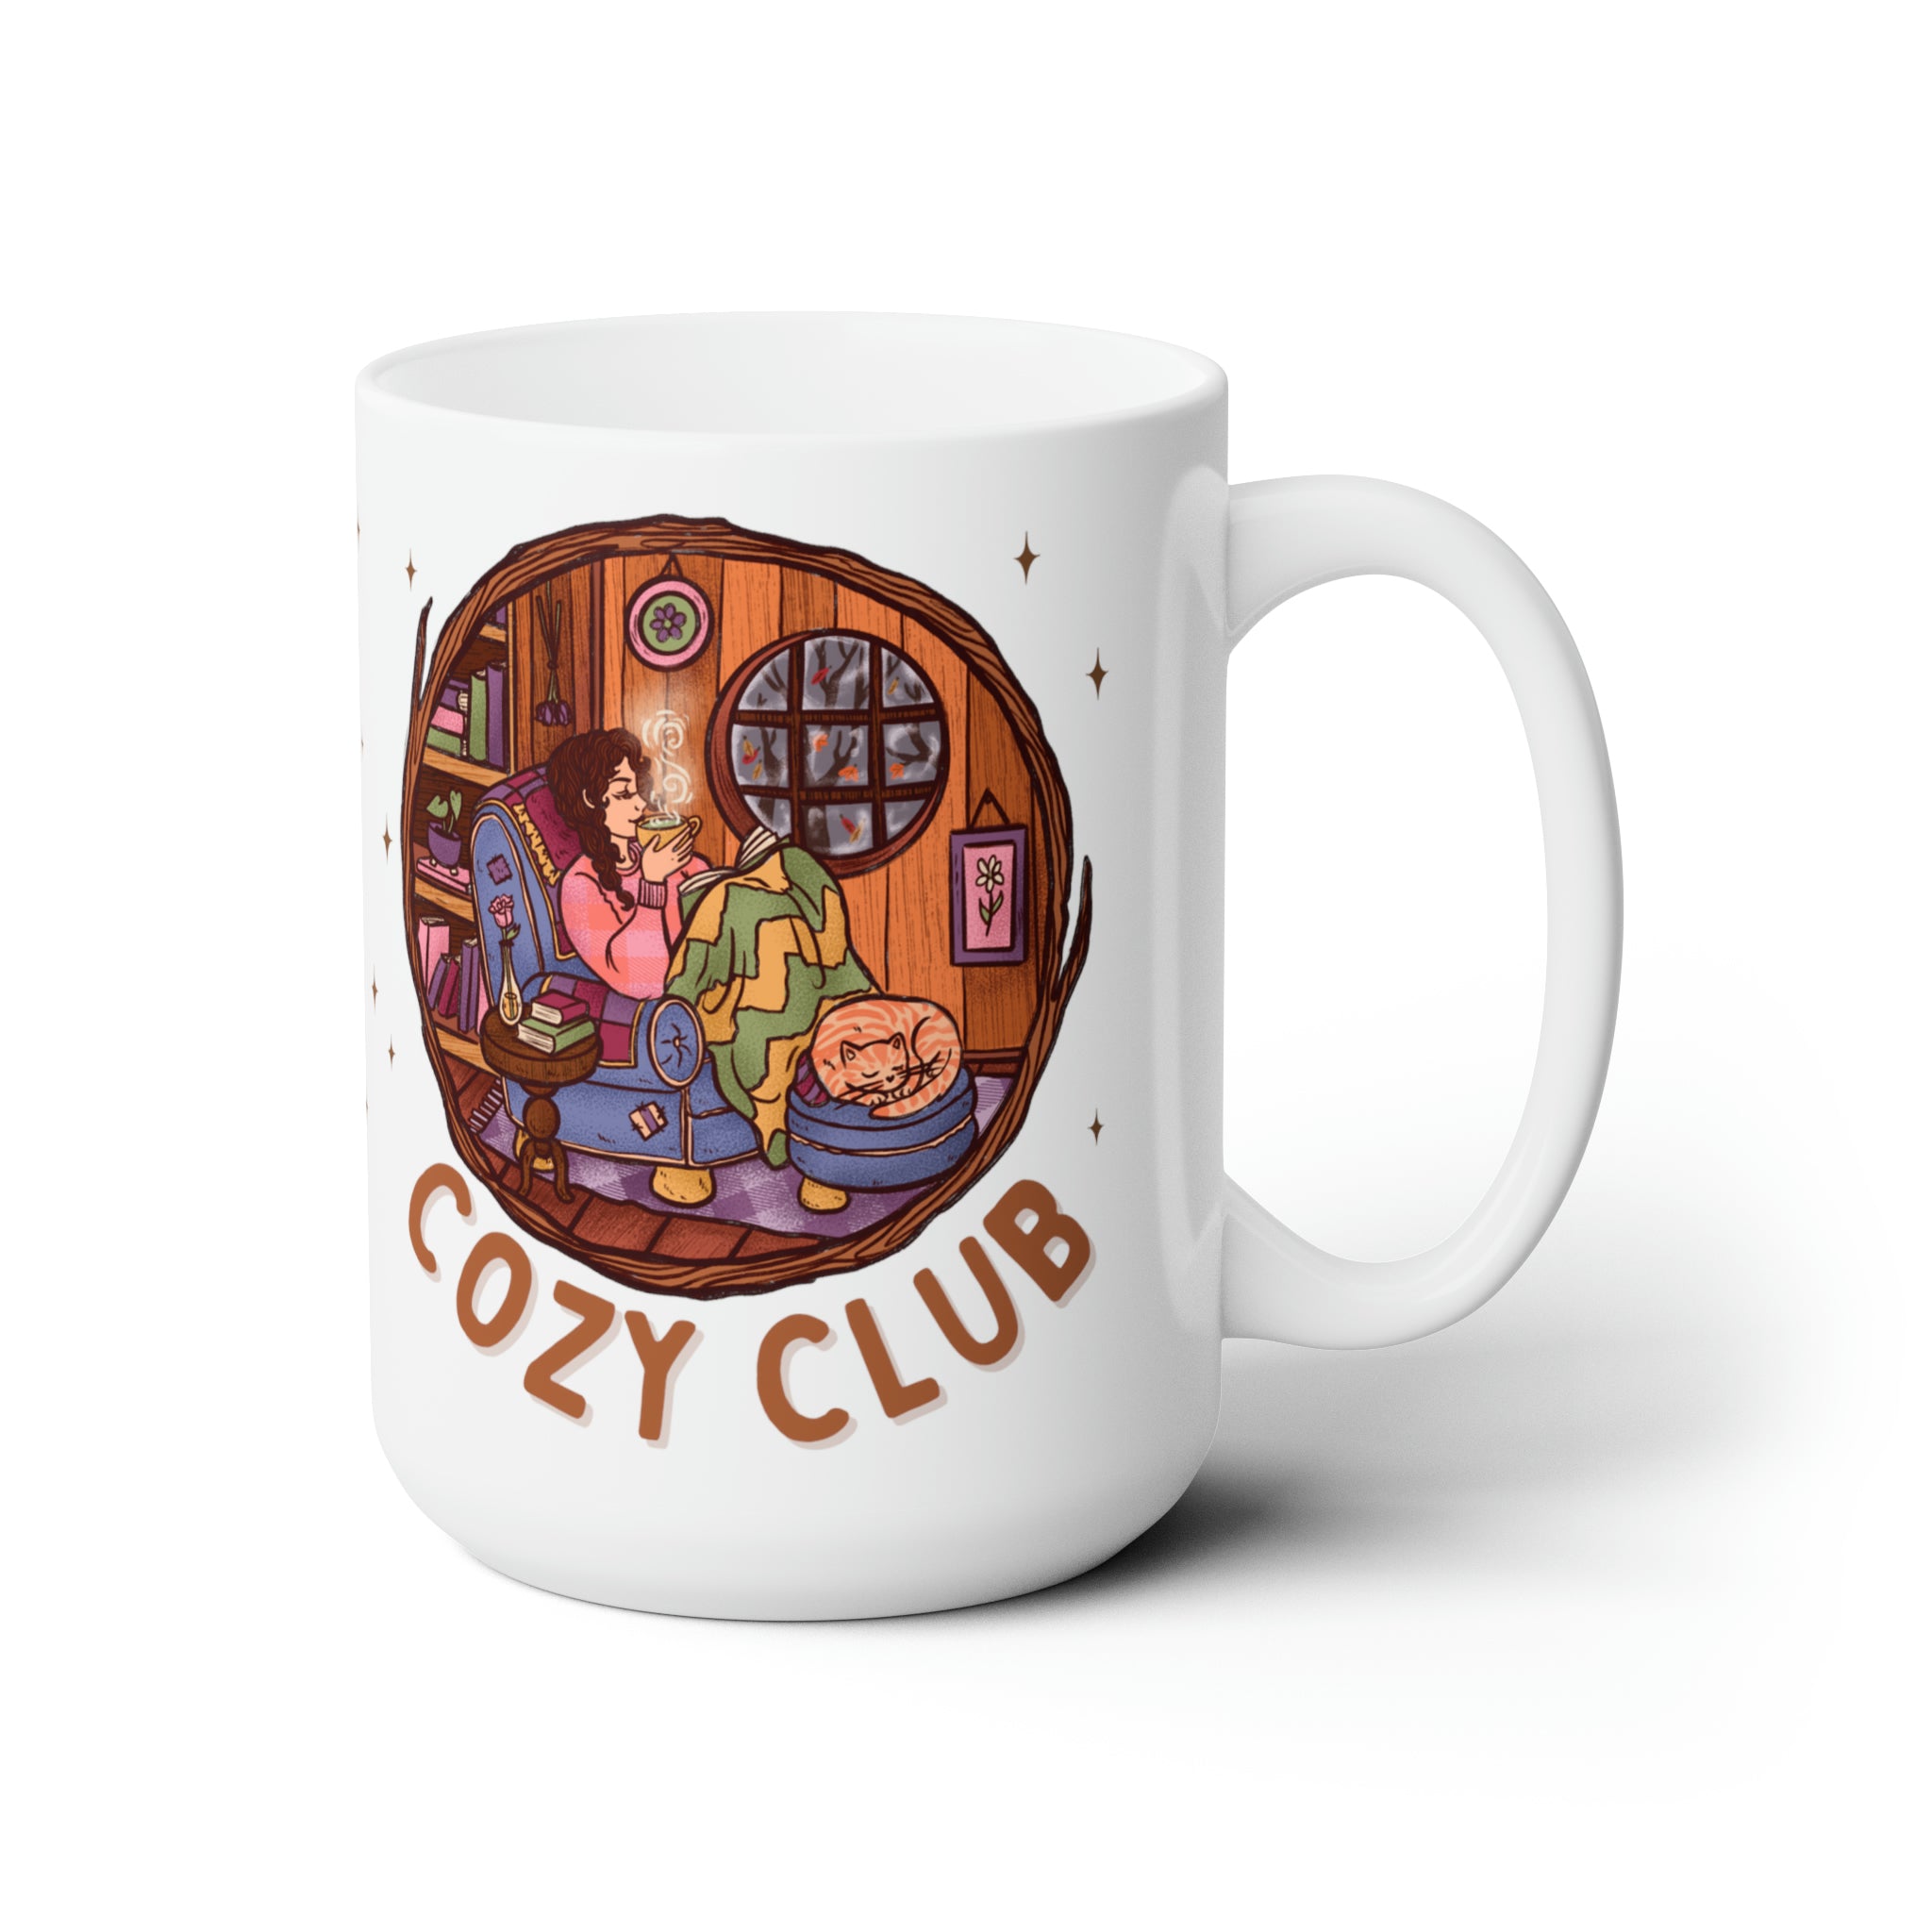 Cozy Club Mug 15oz